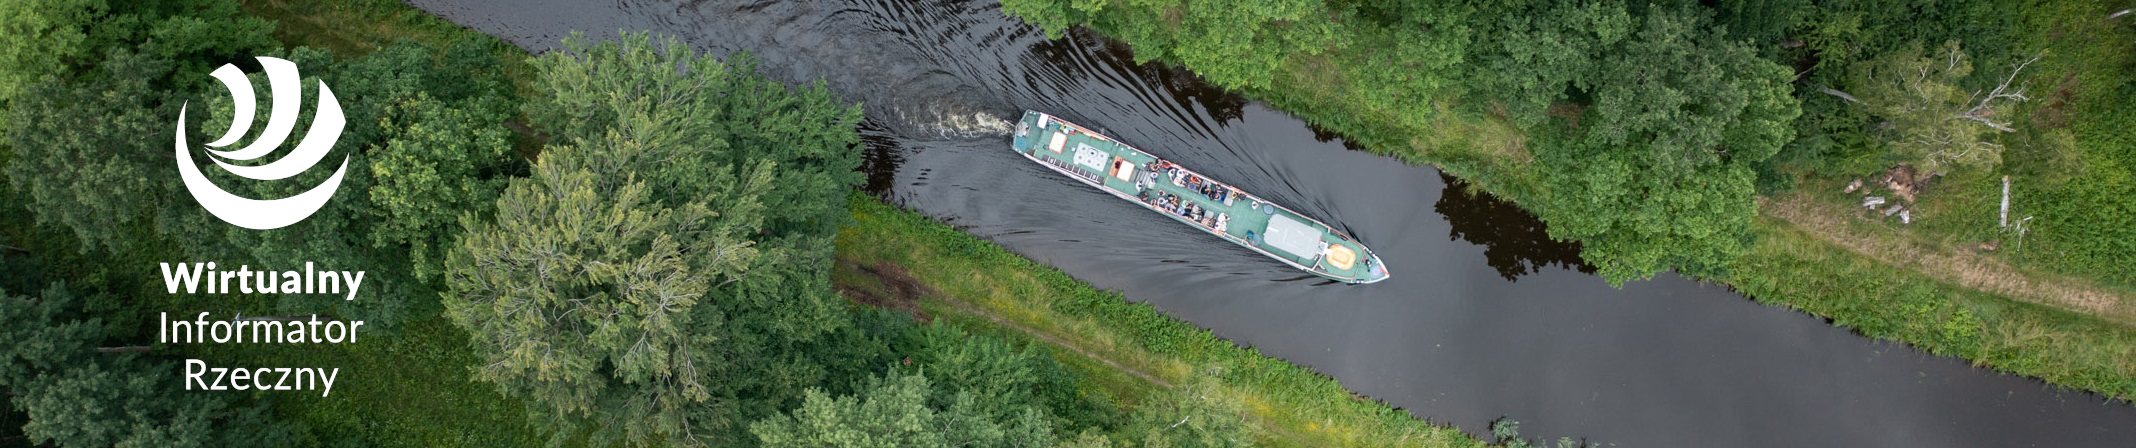 Zdjęcie rzeki wraz z łodzią widzianą z lotu ptaka, po lewej stronie białe logo WIR.